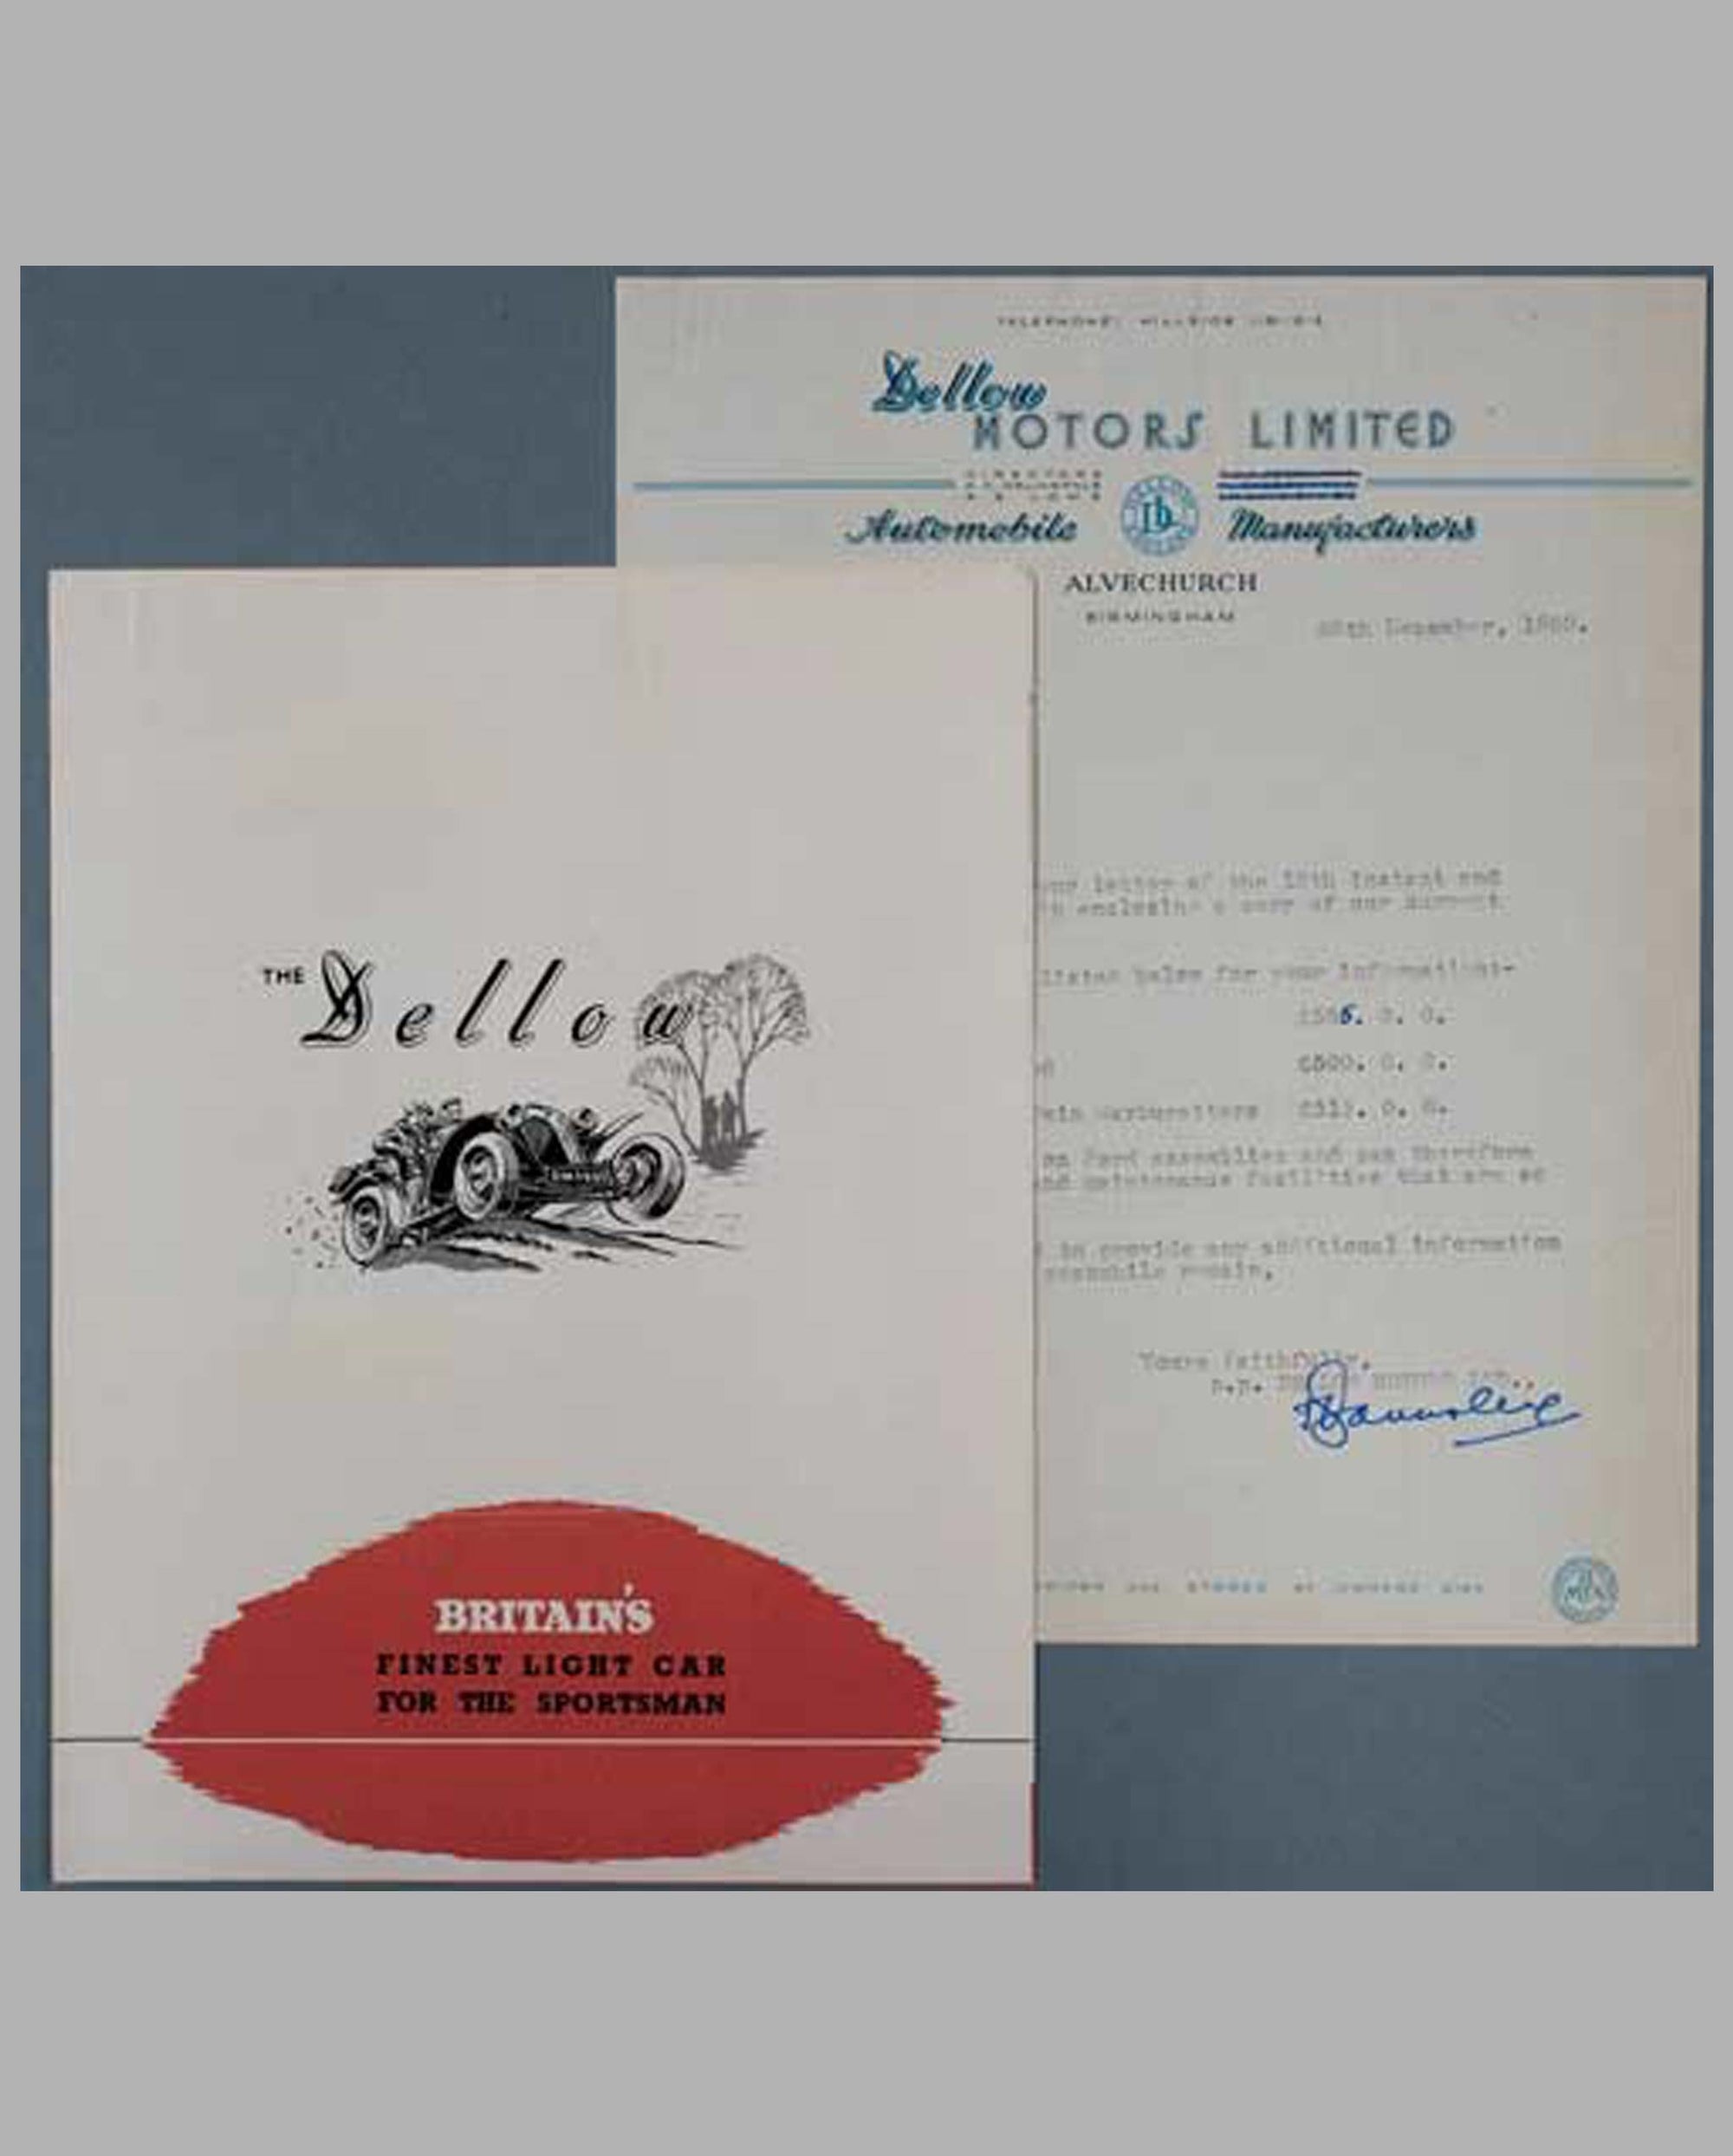 1950 Dellow Motors Limited sales brochure